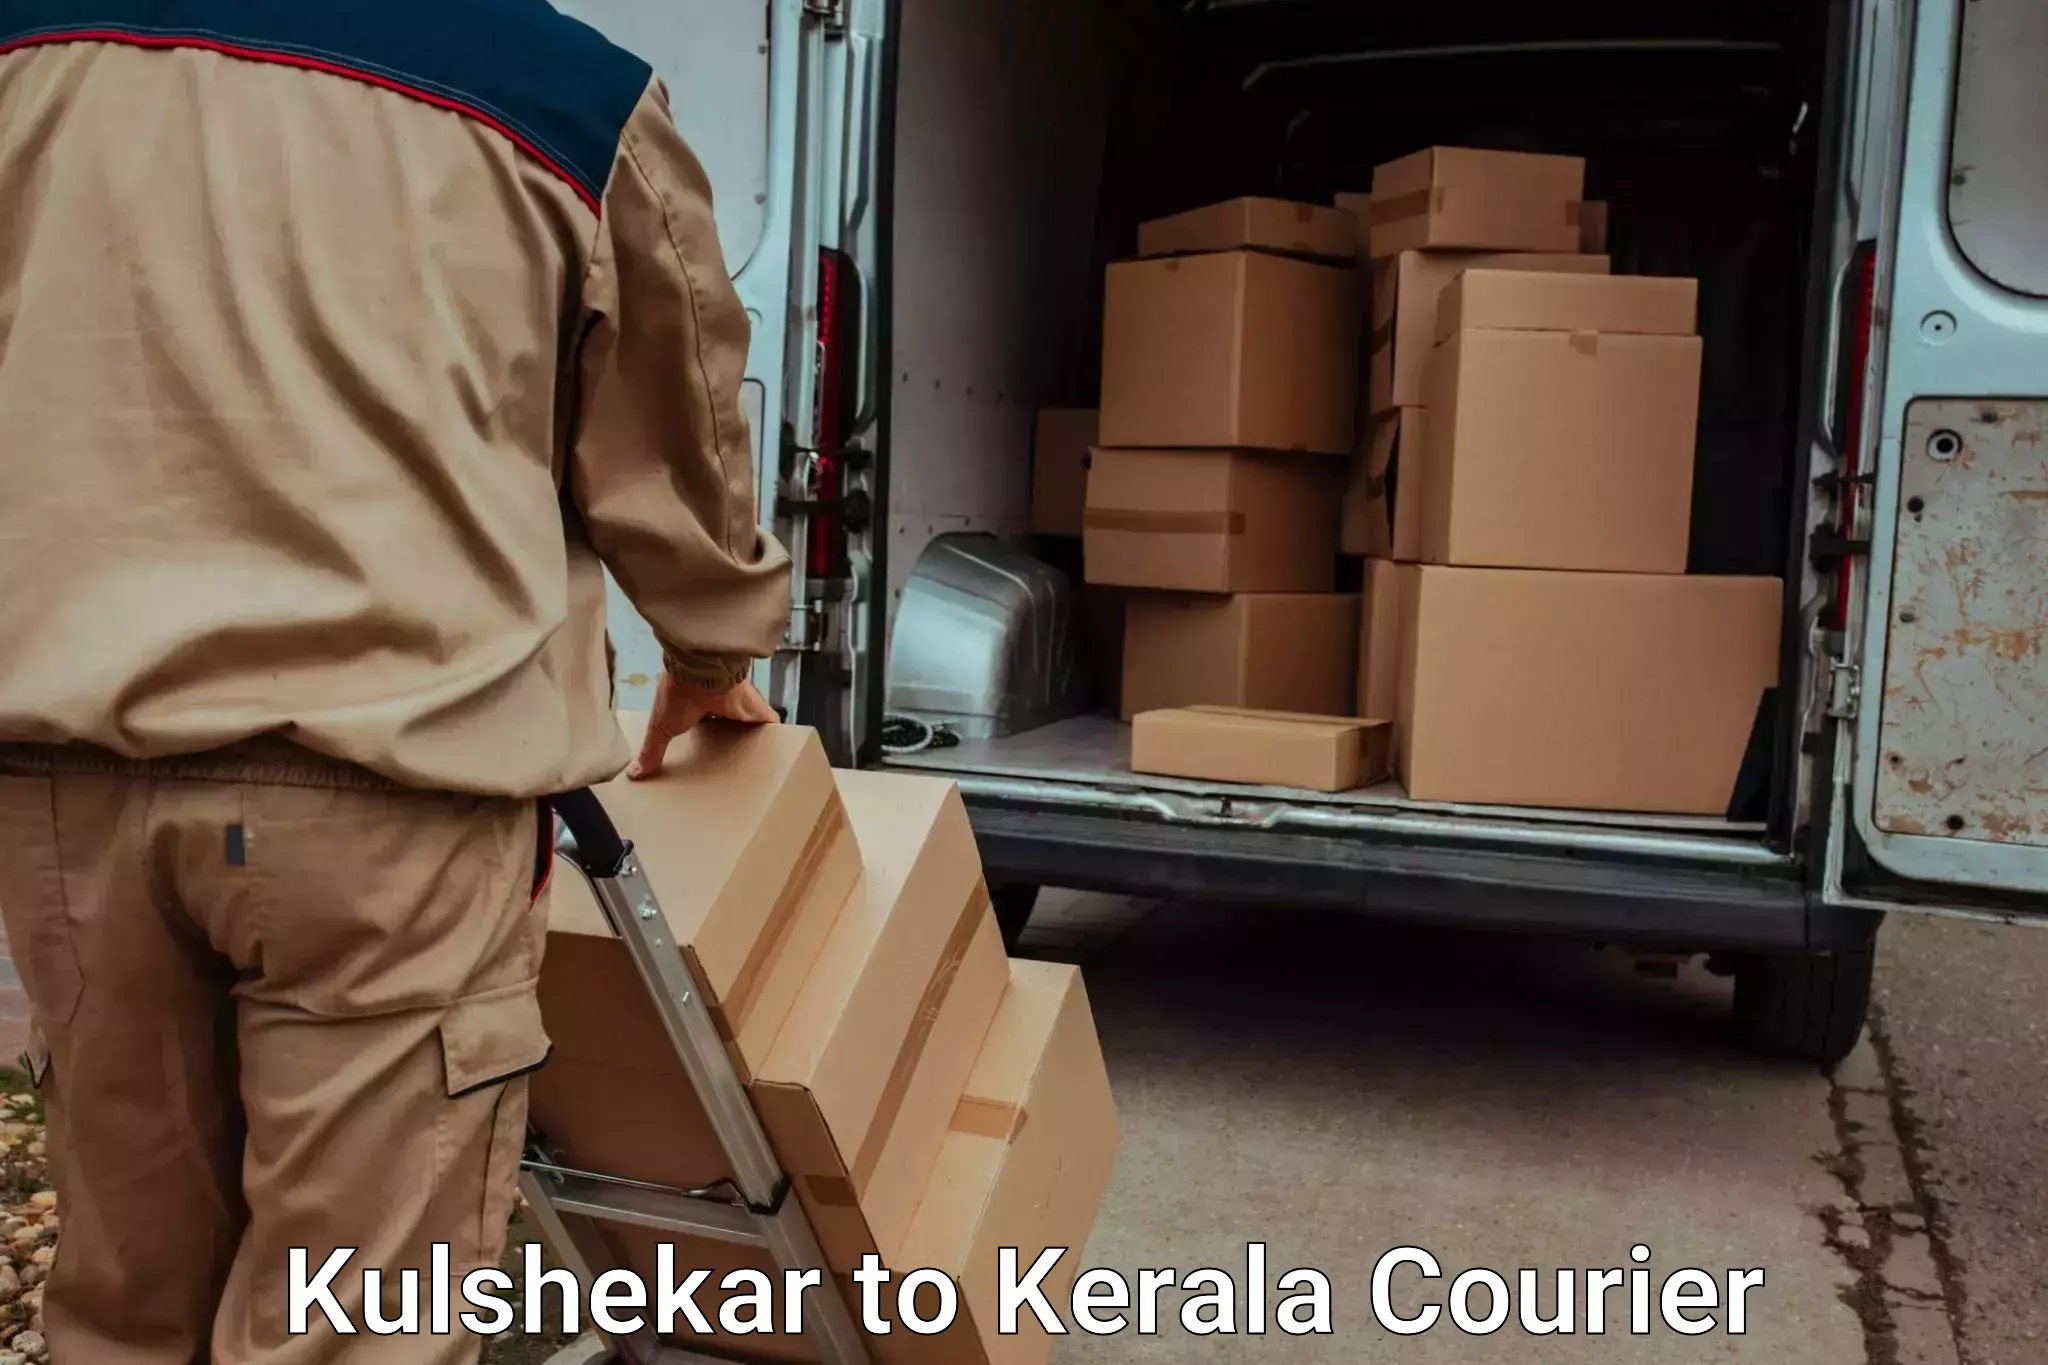 Luggage transport logistics Kulshekar to Kuchi